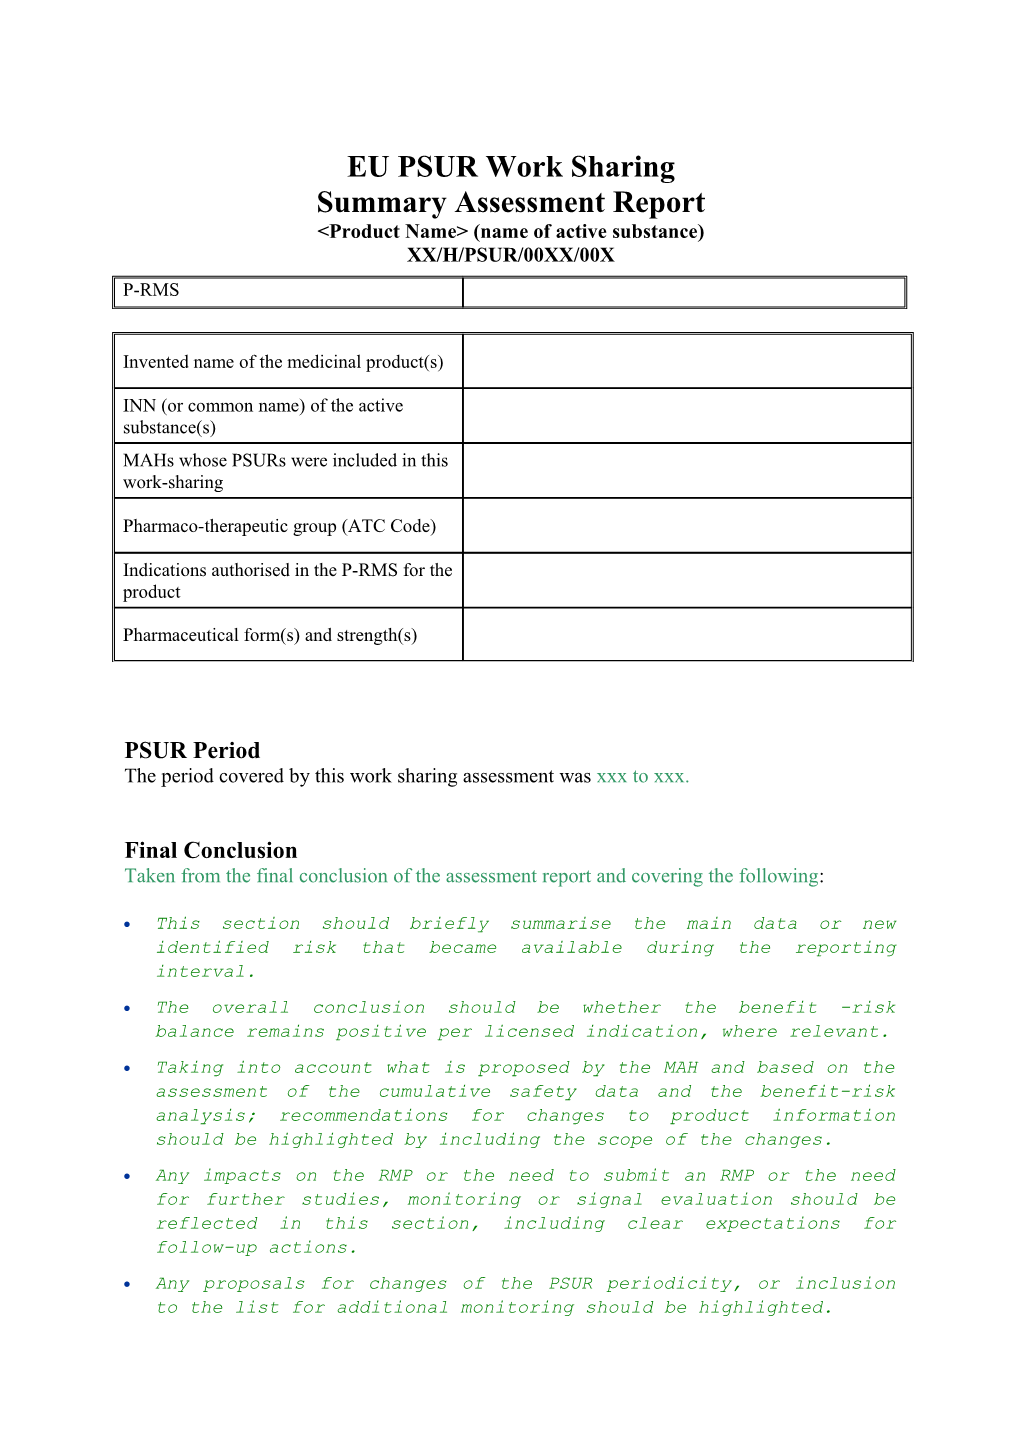 2-01-G UK 1063 - EU PSUR Assessment Report Template